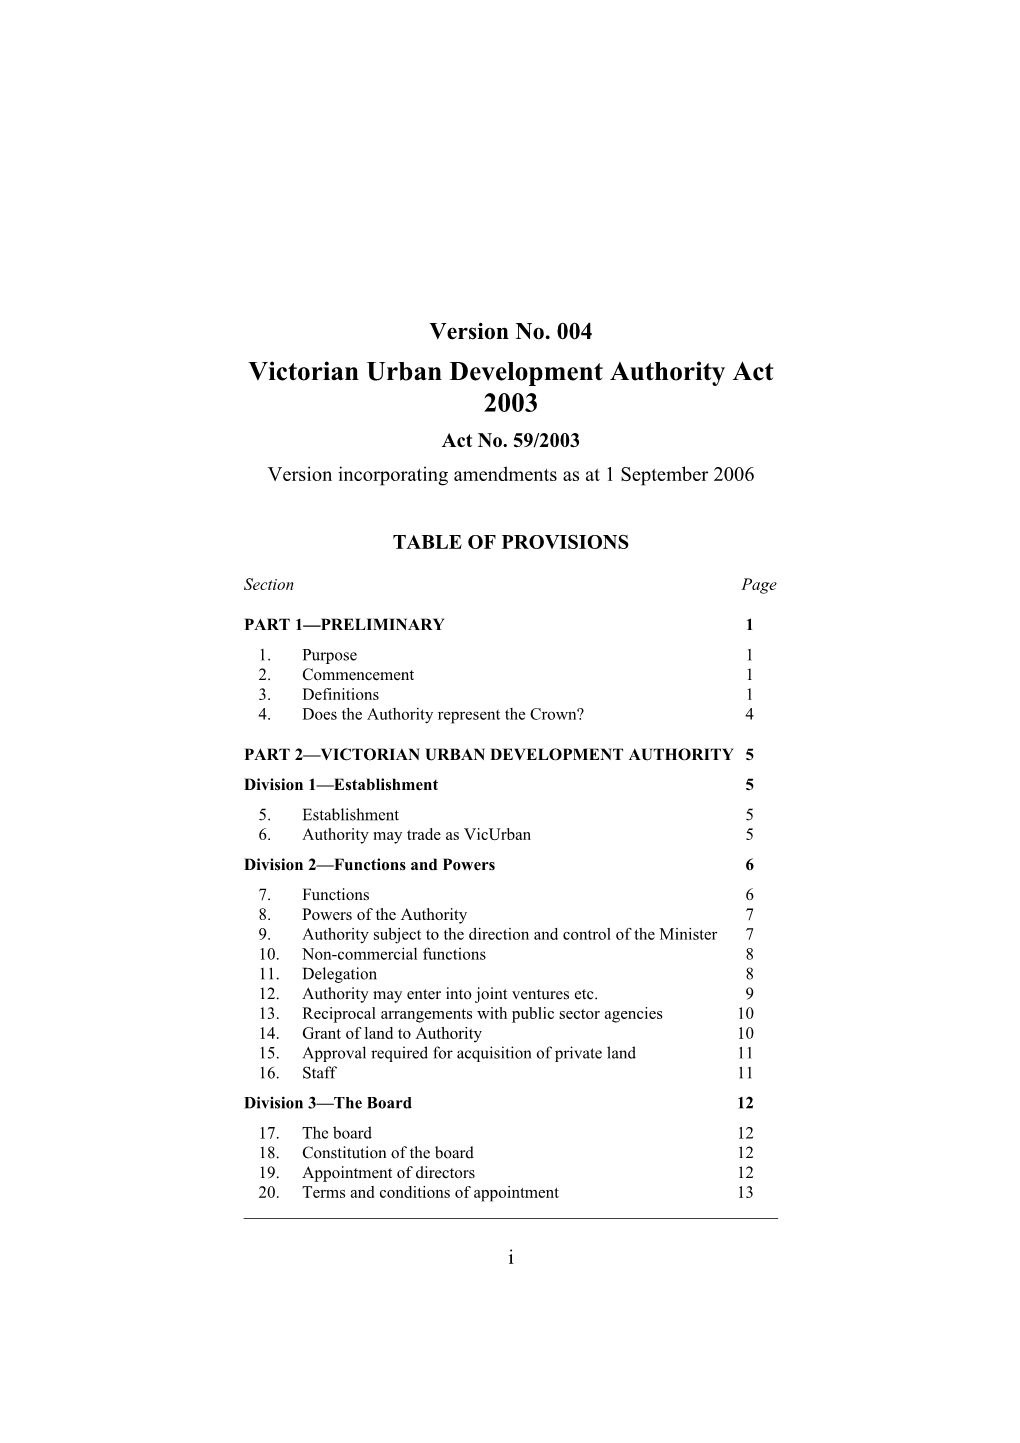 Victorian Urban Development Authority Act 2003